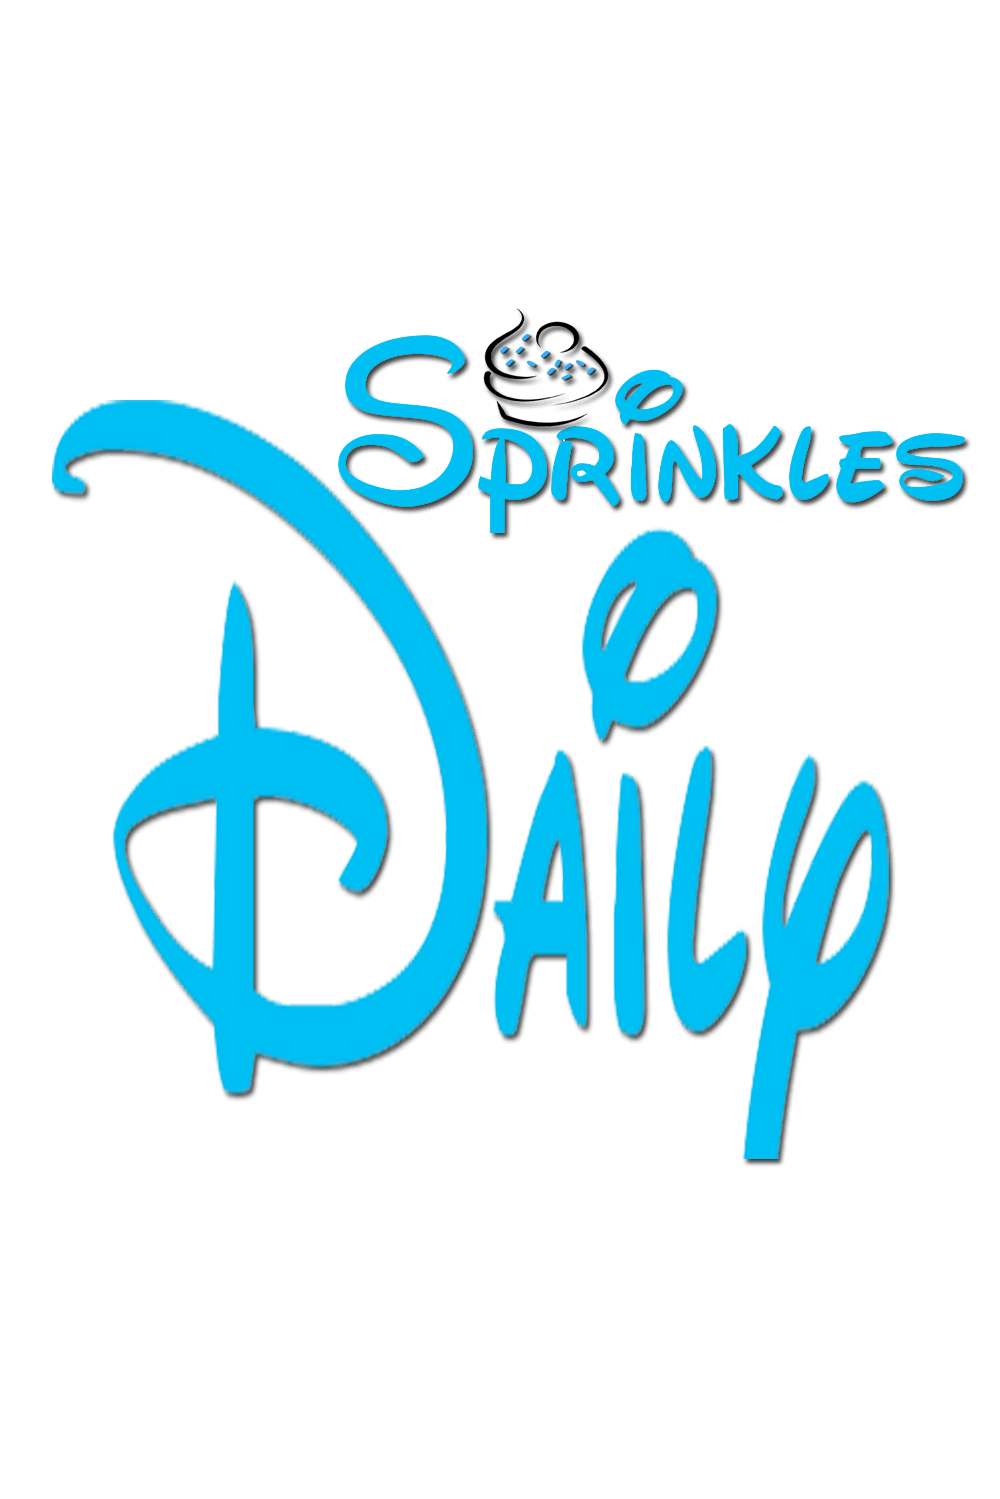 Daily Sprinkles